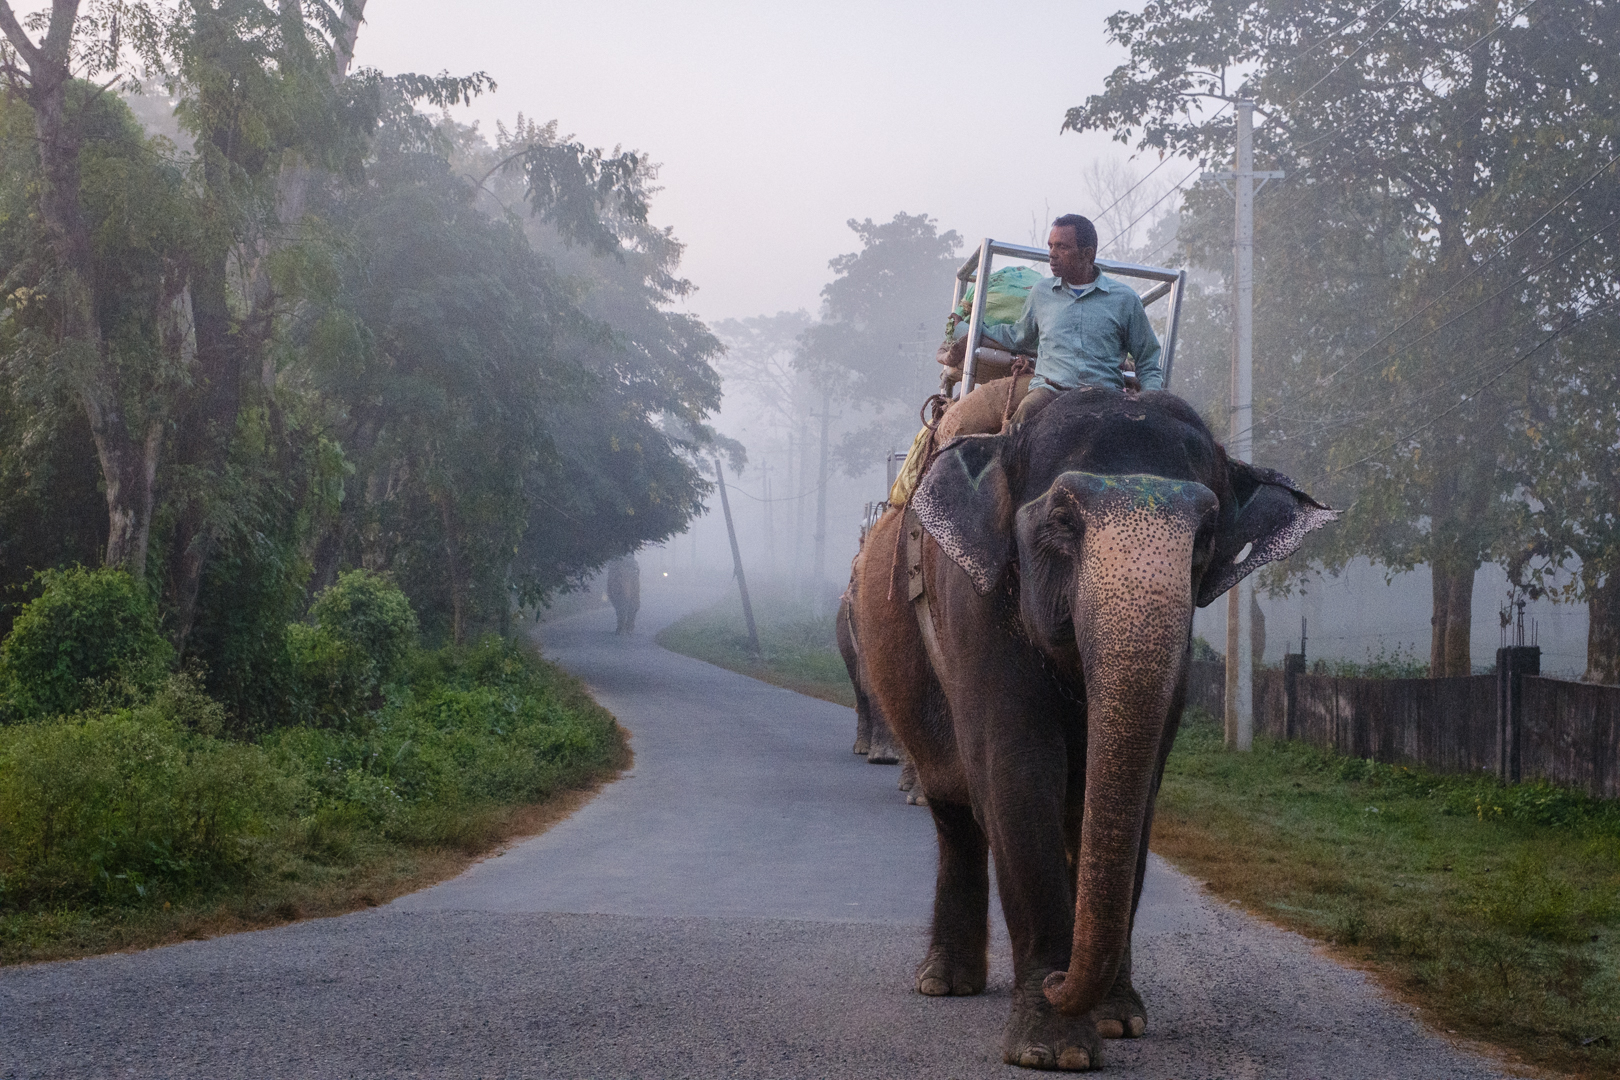 Man on elephant in Nepal